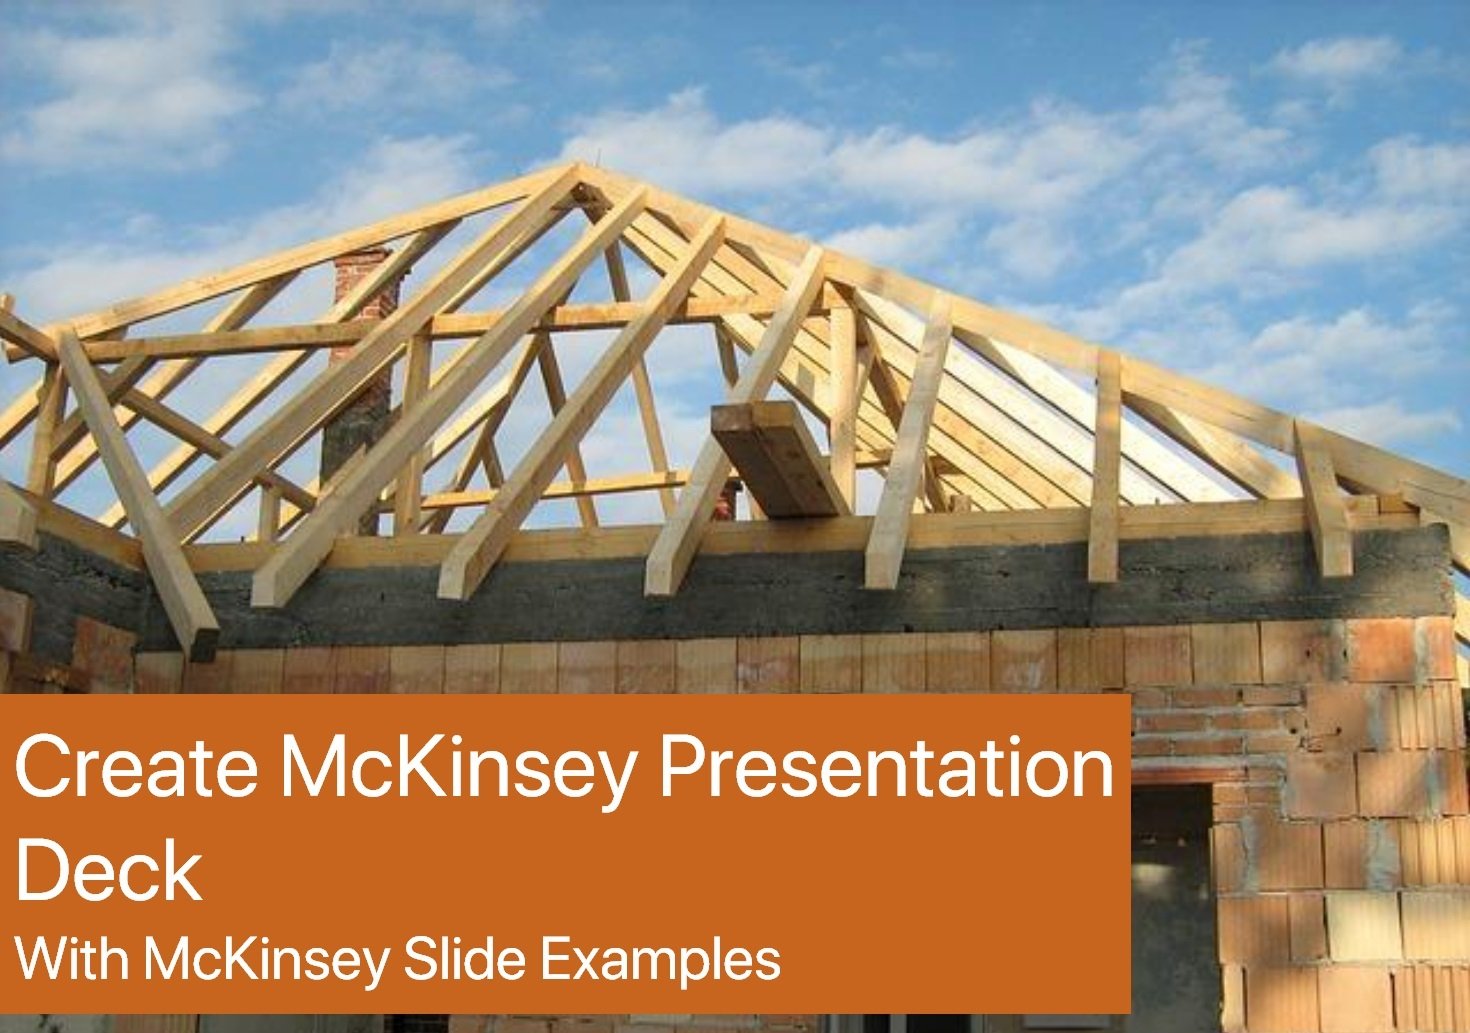 Create McKinsey Presentation Deck